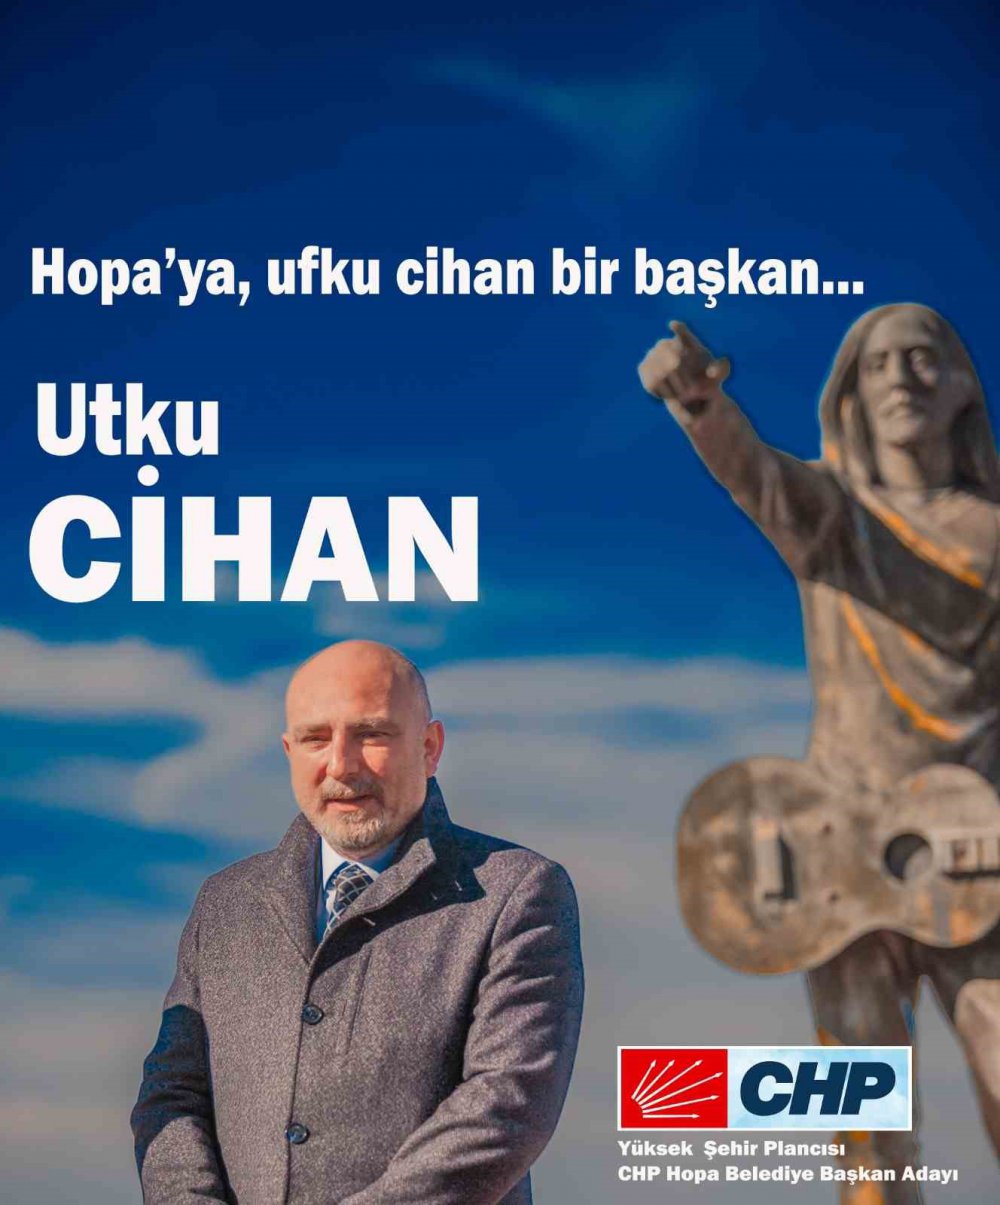 Hopa’da Ak Parti Ve Chp’nin Belediye Başkan Adaylarının ismide soyadıda aynı